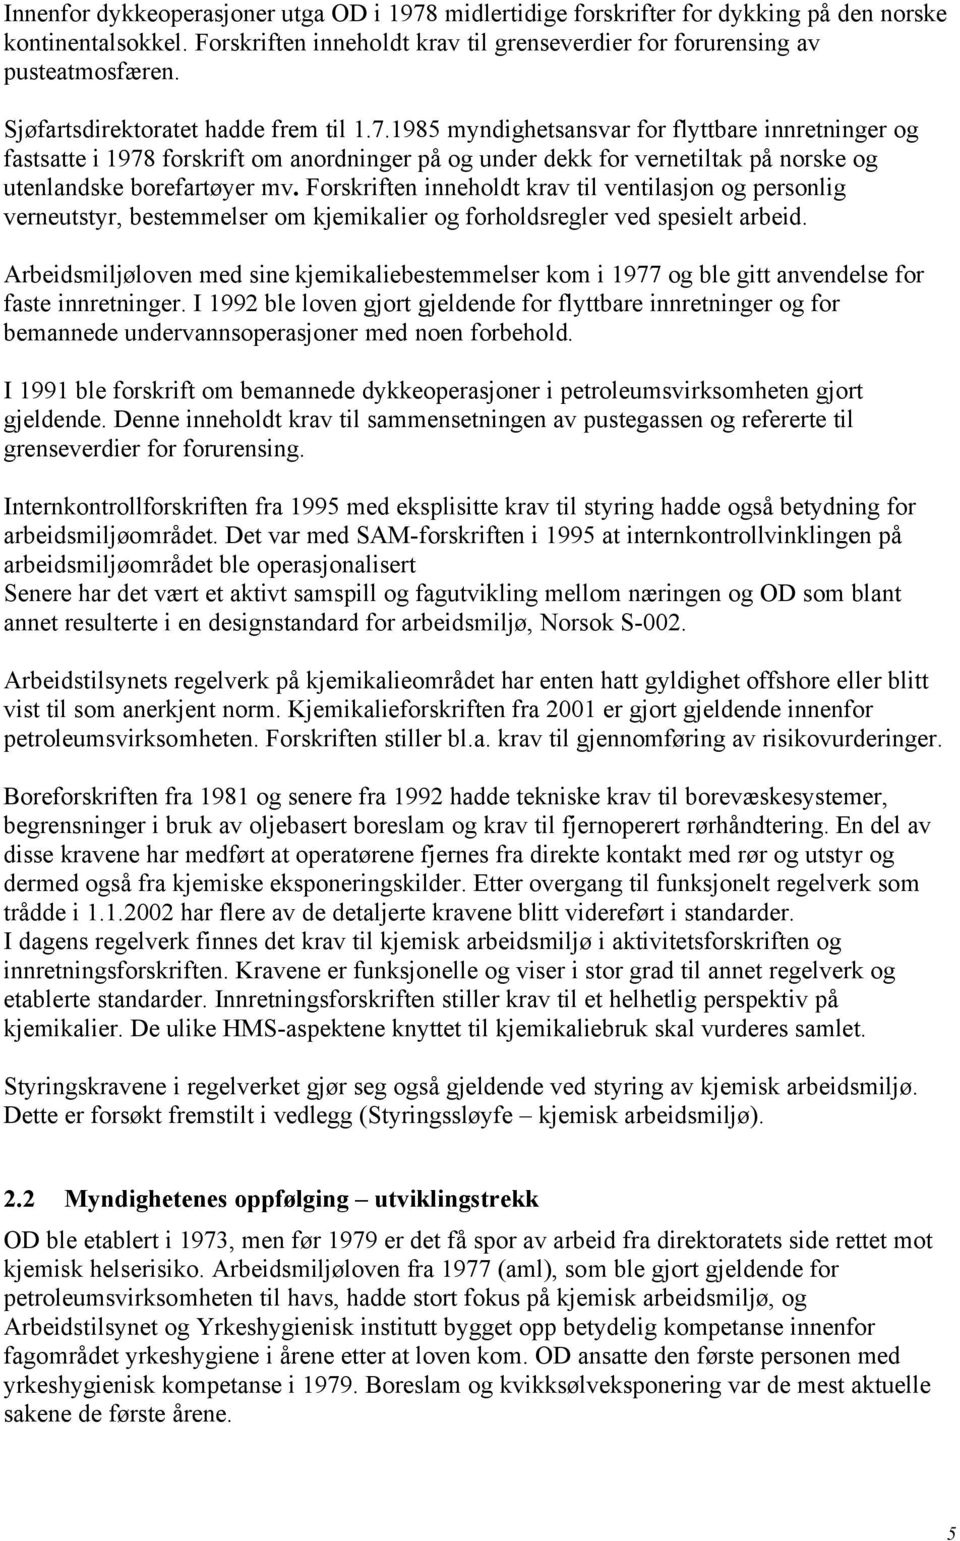 1985 myndighetsansvar for flyttbare innretninger og fastsatte i 1978 forskrift om anordninger på og under dekk for vernetiltak på norske og utenlandske borefartøyer mv.